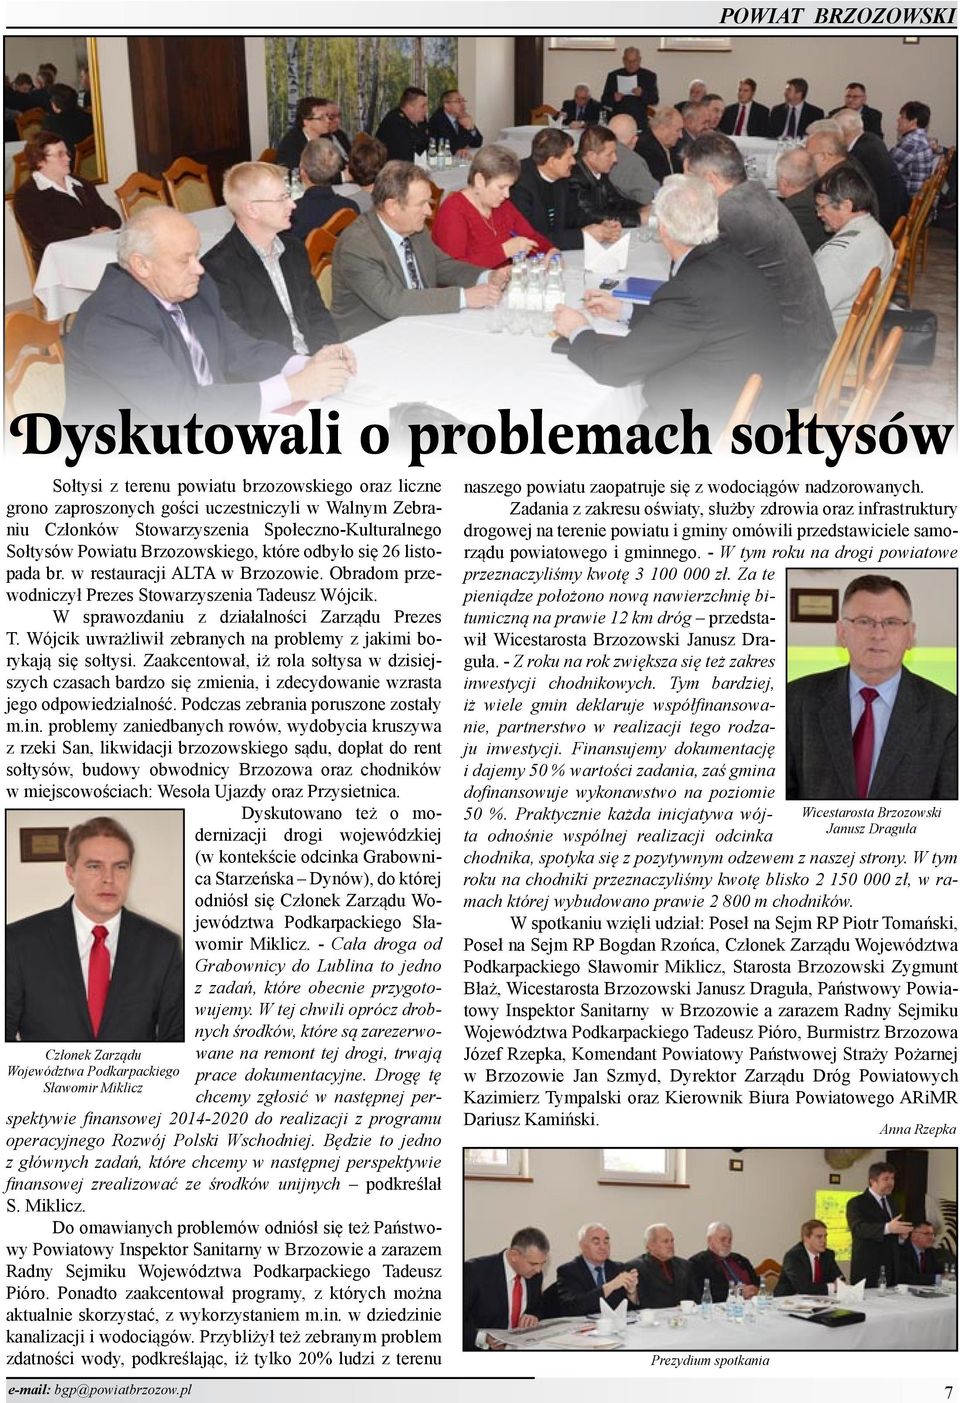 Obradom przewodniczył Prezes Stowarzyszenia Tadeusz Wójcik. W sprawozdaniu z działalności Zarządu Prezes T. Wójcik uwrażliwił zebranych na problemy z jakimi borykają się sołtysi.